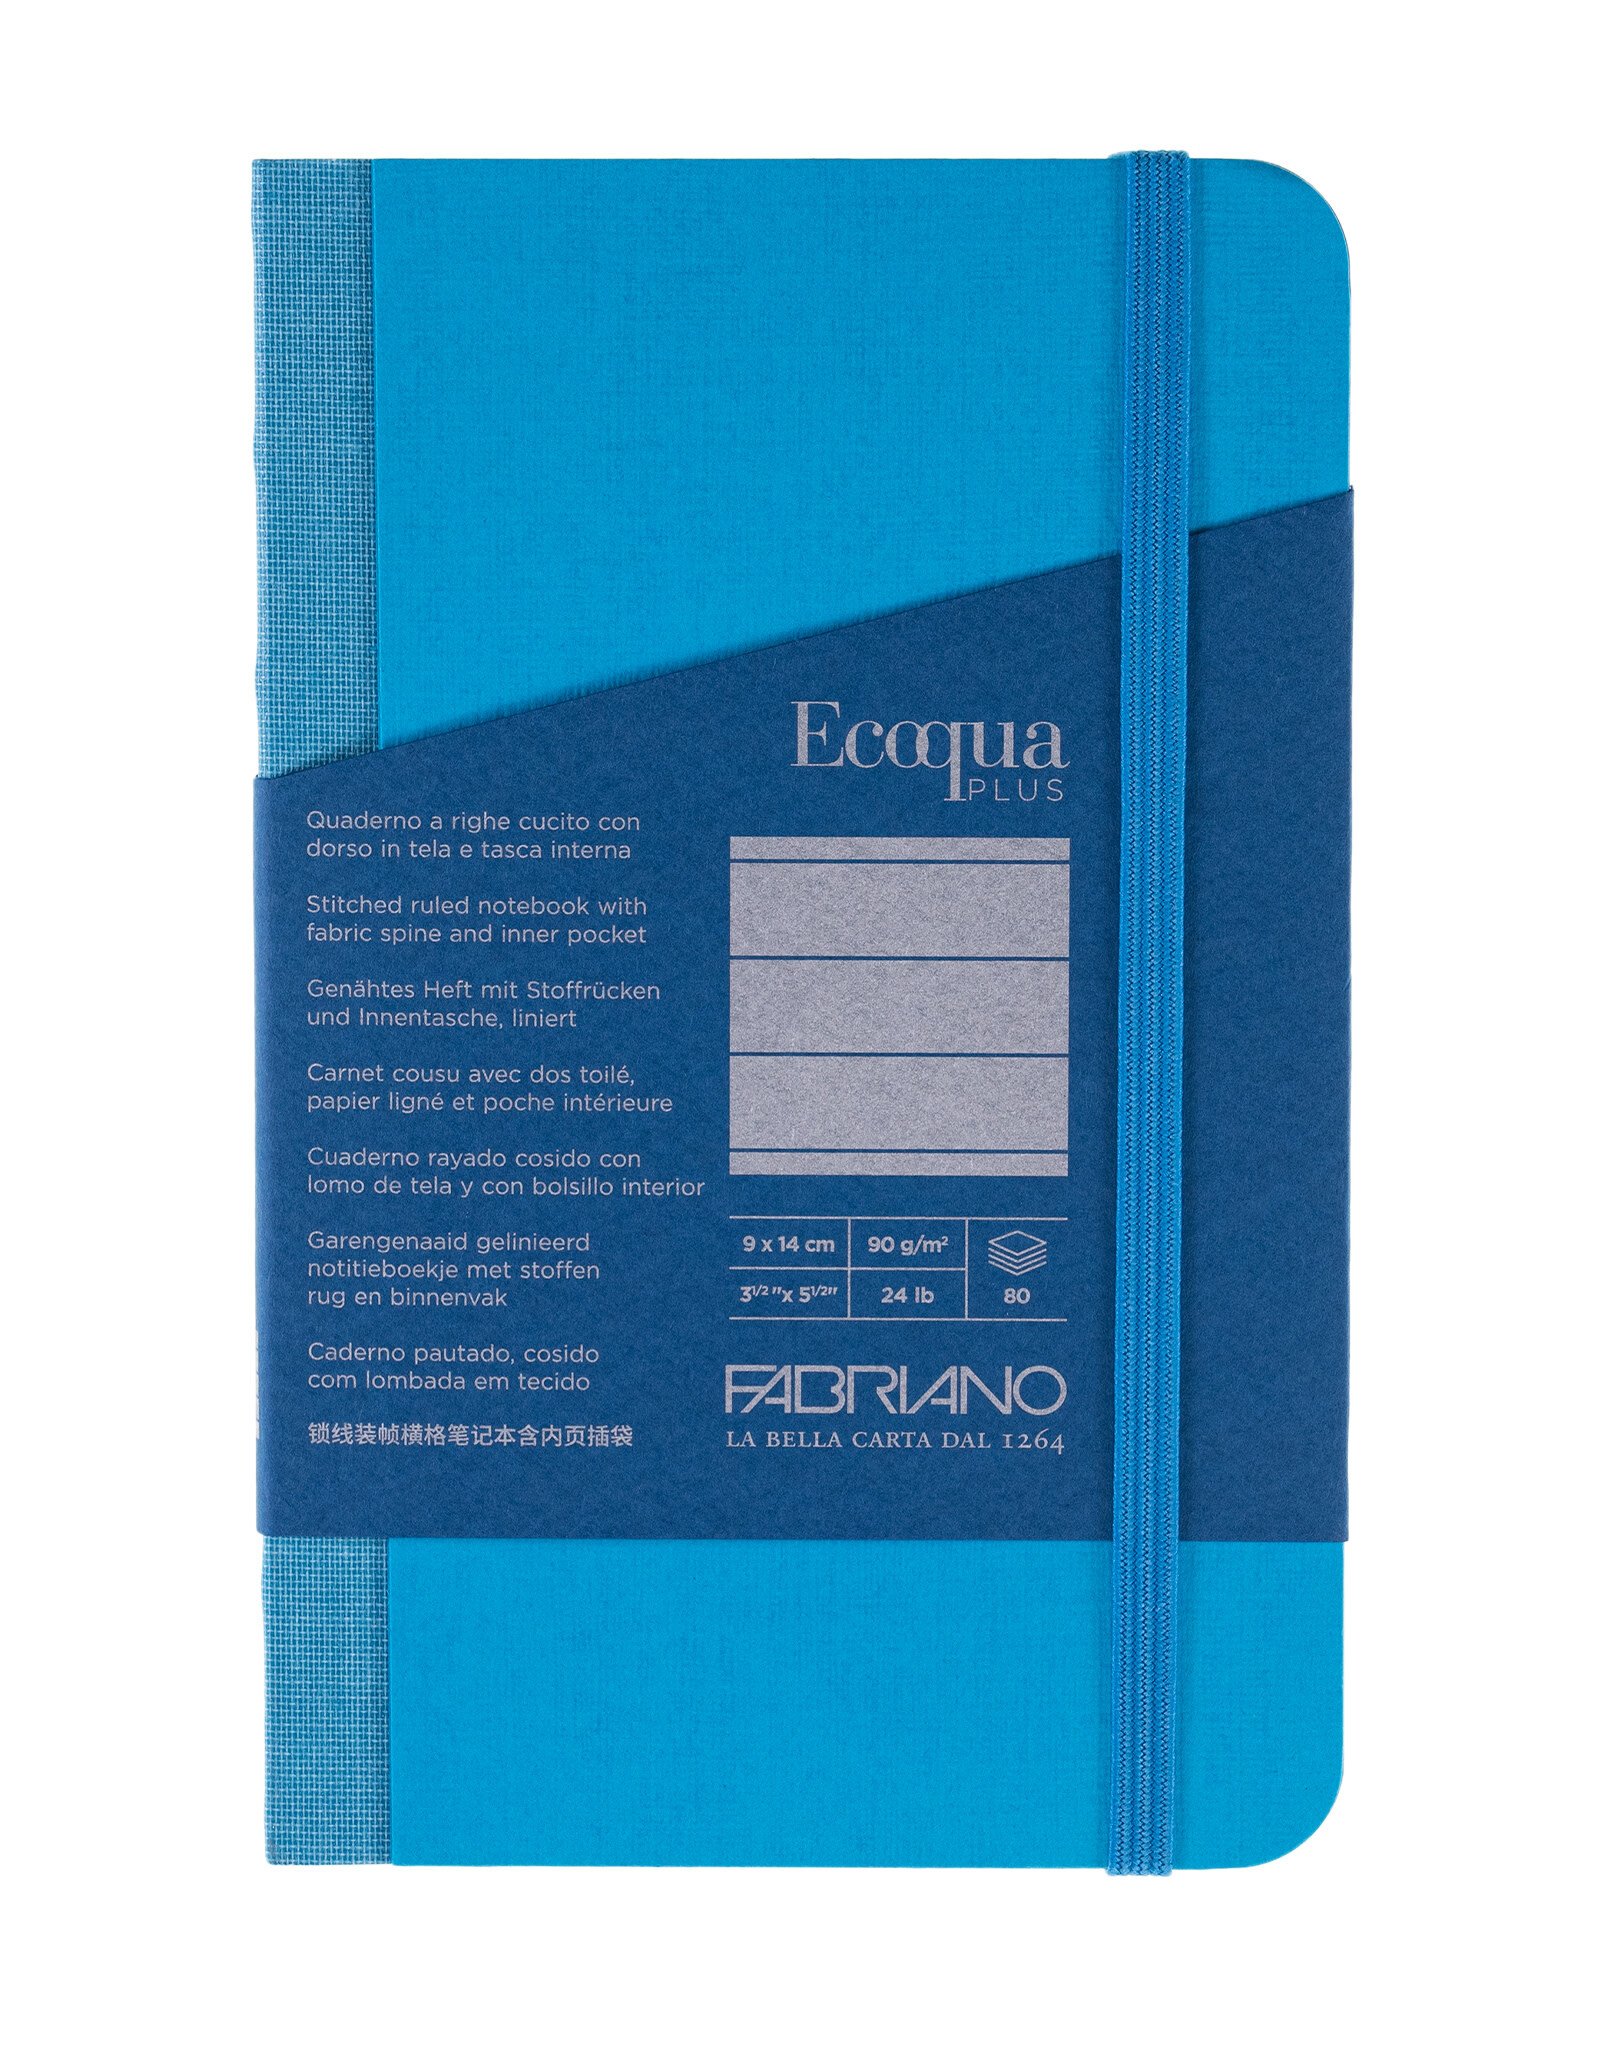 Ecoqua Plus Fabric Bound Notebook, Turquoise, 3.5” x 5.5”, Ruled